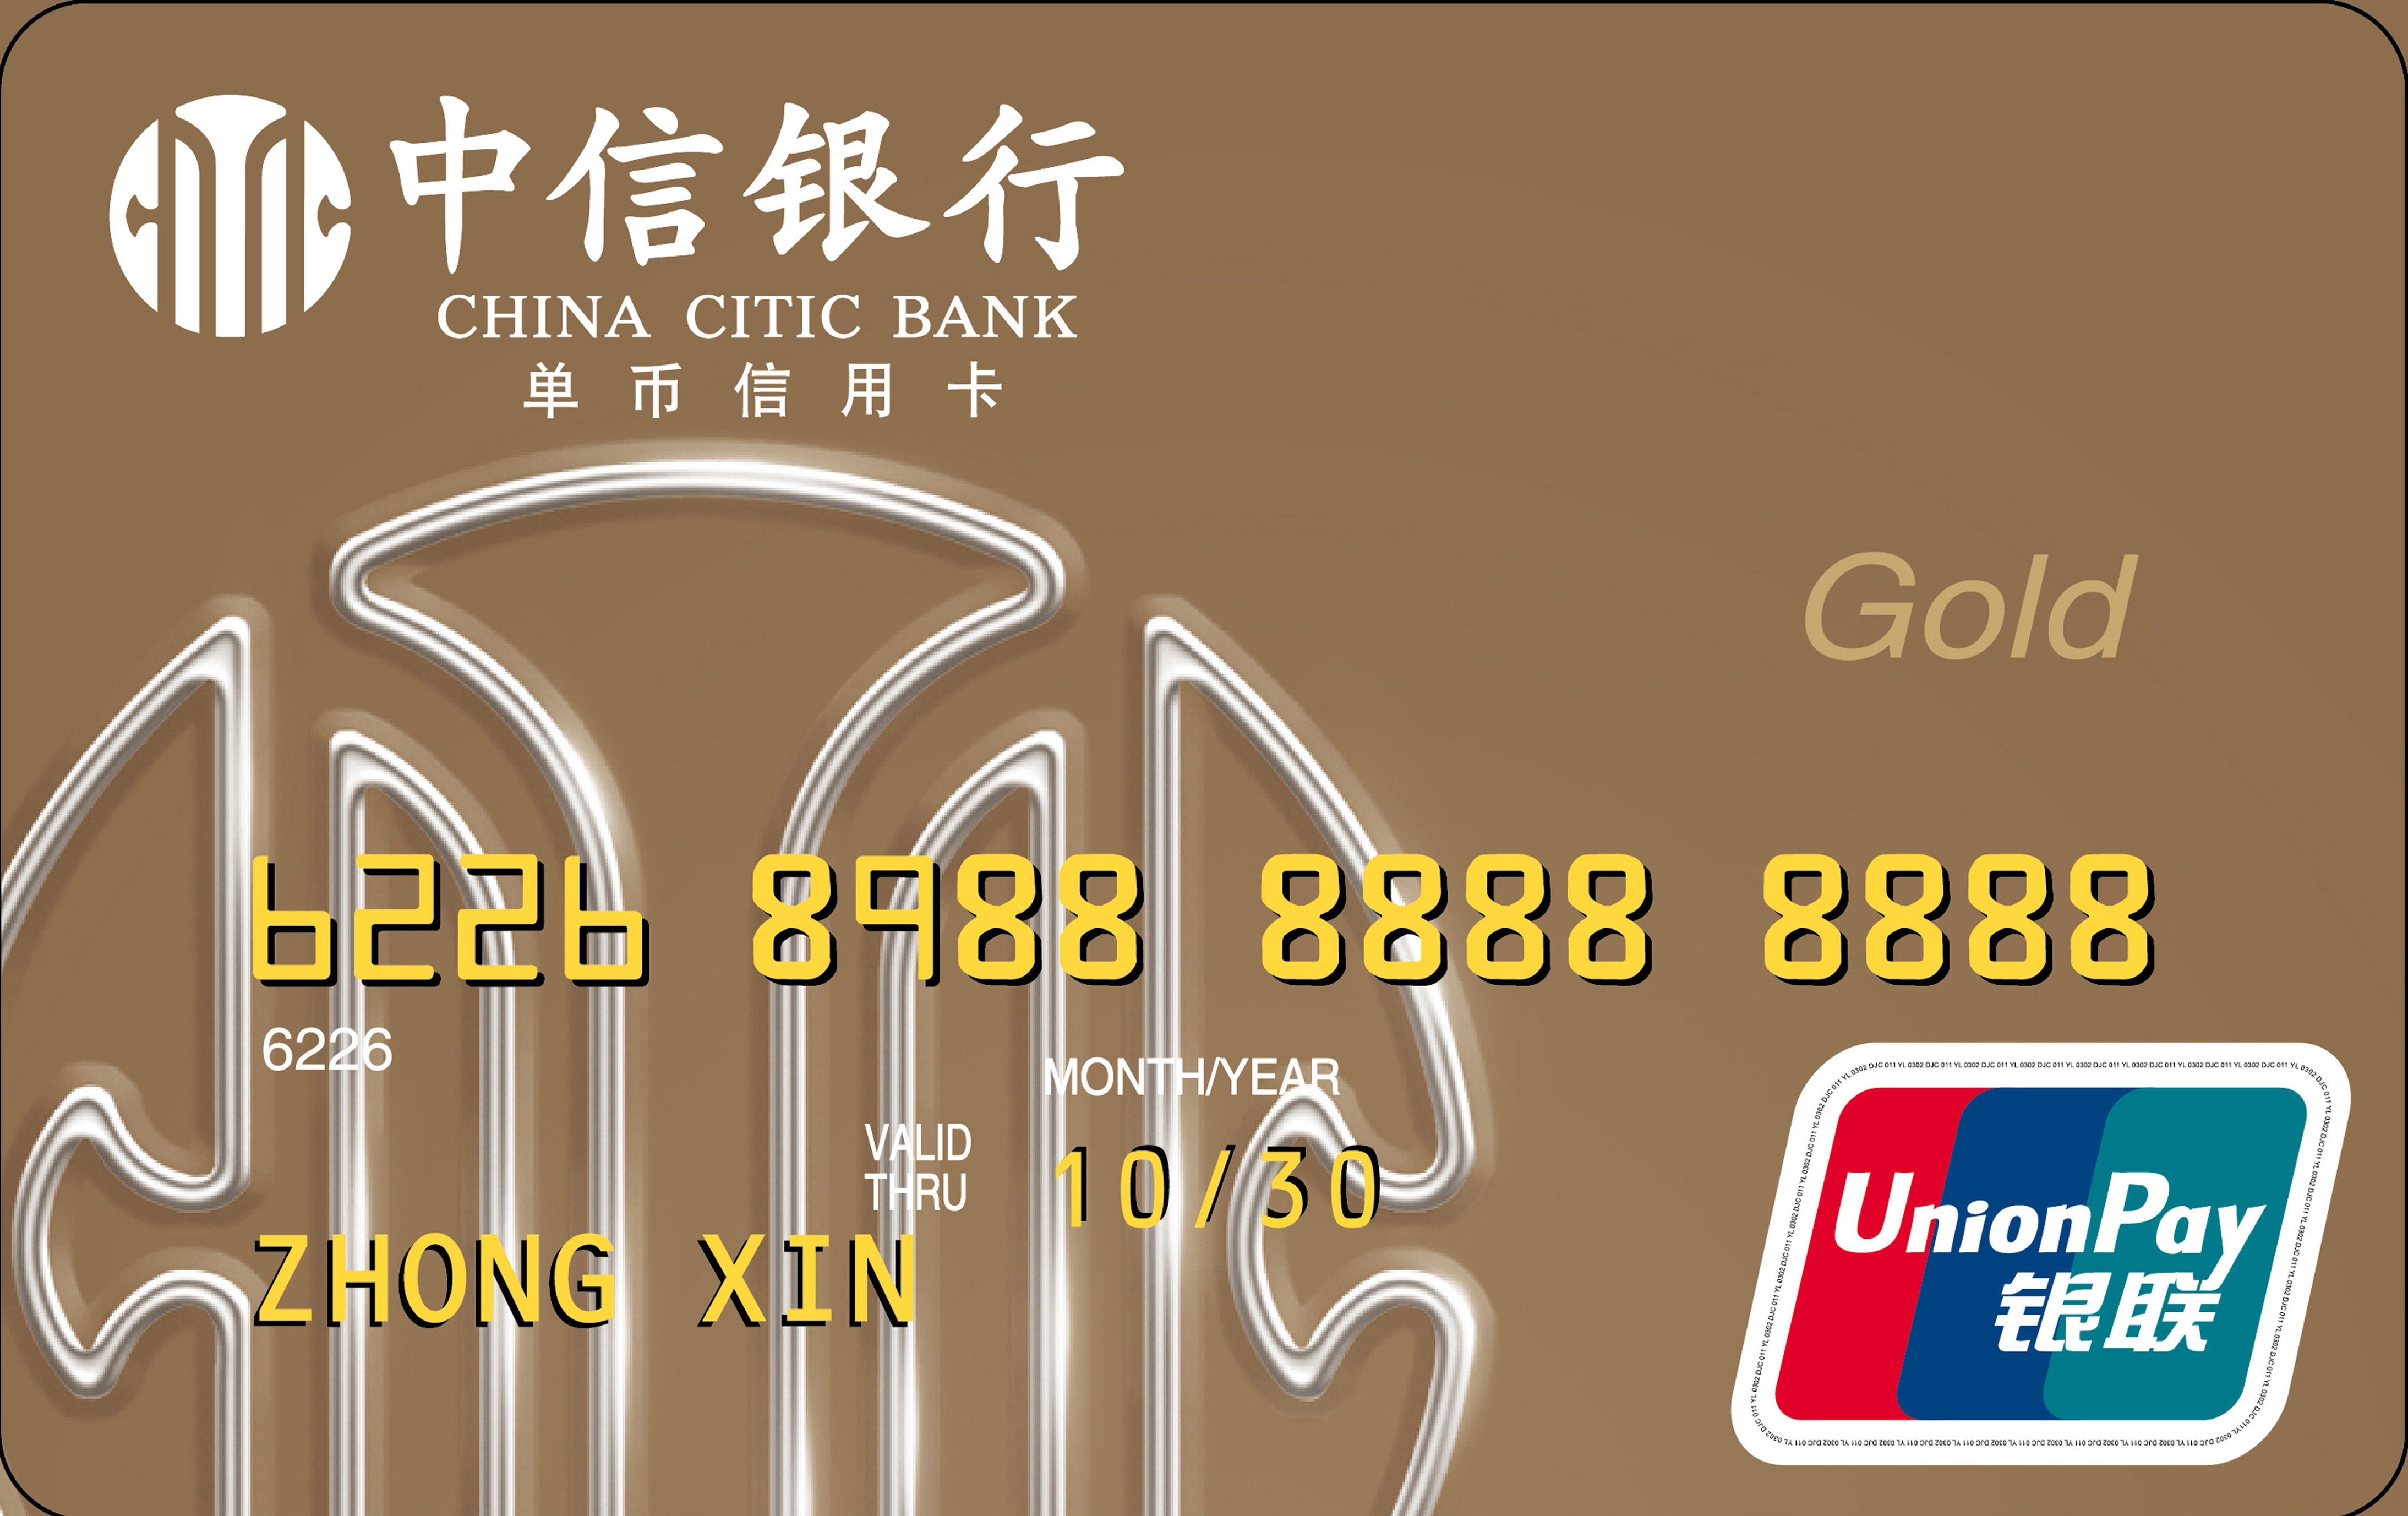 了解更多关于中国银行-中国南方明珠信用卡的信息 - Utua